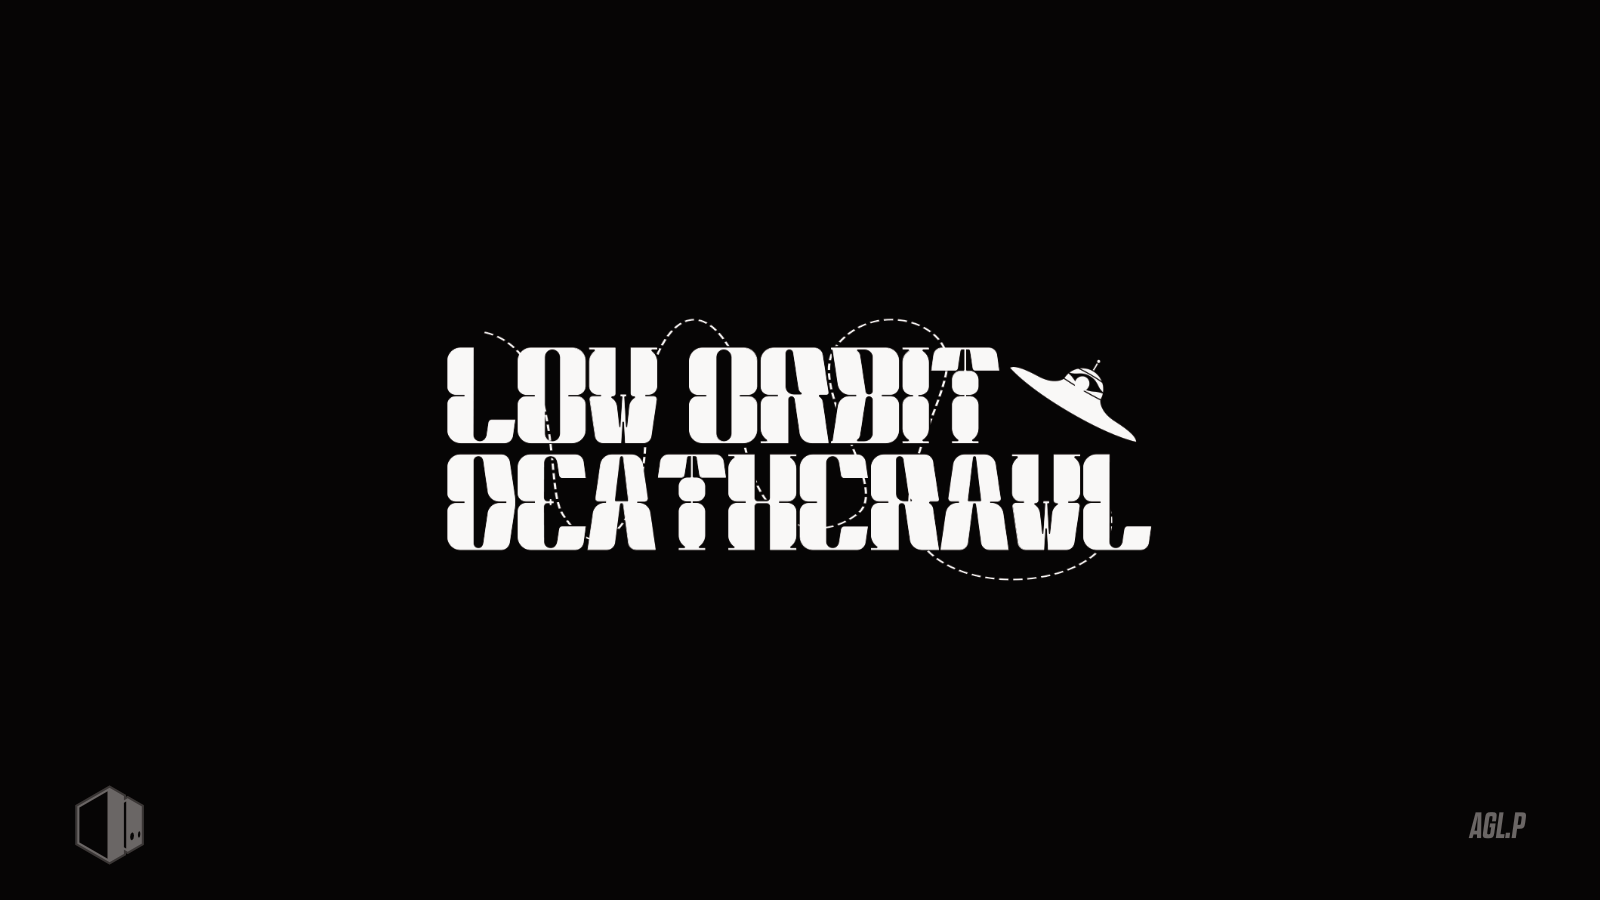 Low Orbit Deathcrawl | Micah Anderson | Micah Anderson